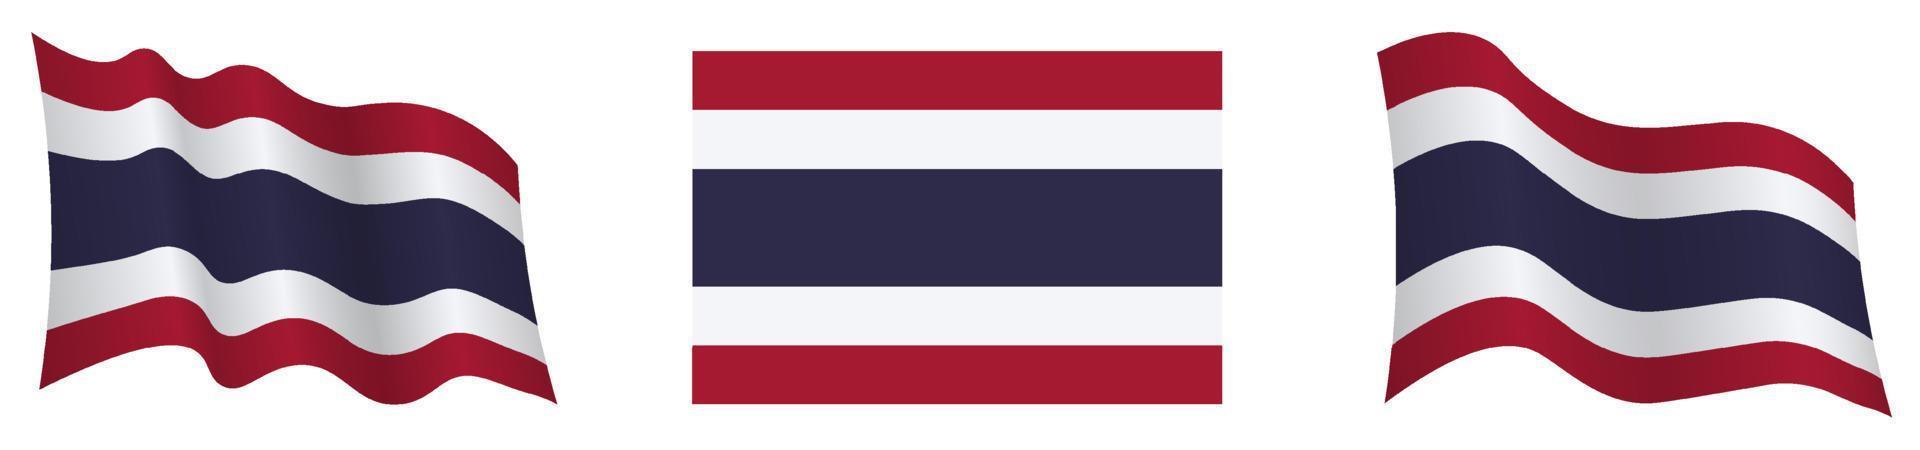 drapeau du royaume de thaïlande en position statique et en mouvement, se développant au vent dans des couleurs et des tailles exactes, sur fond blanc vecteur